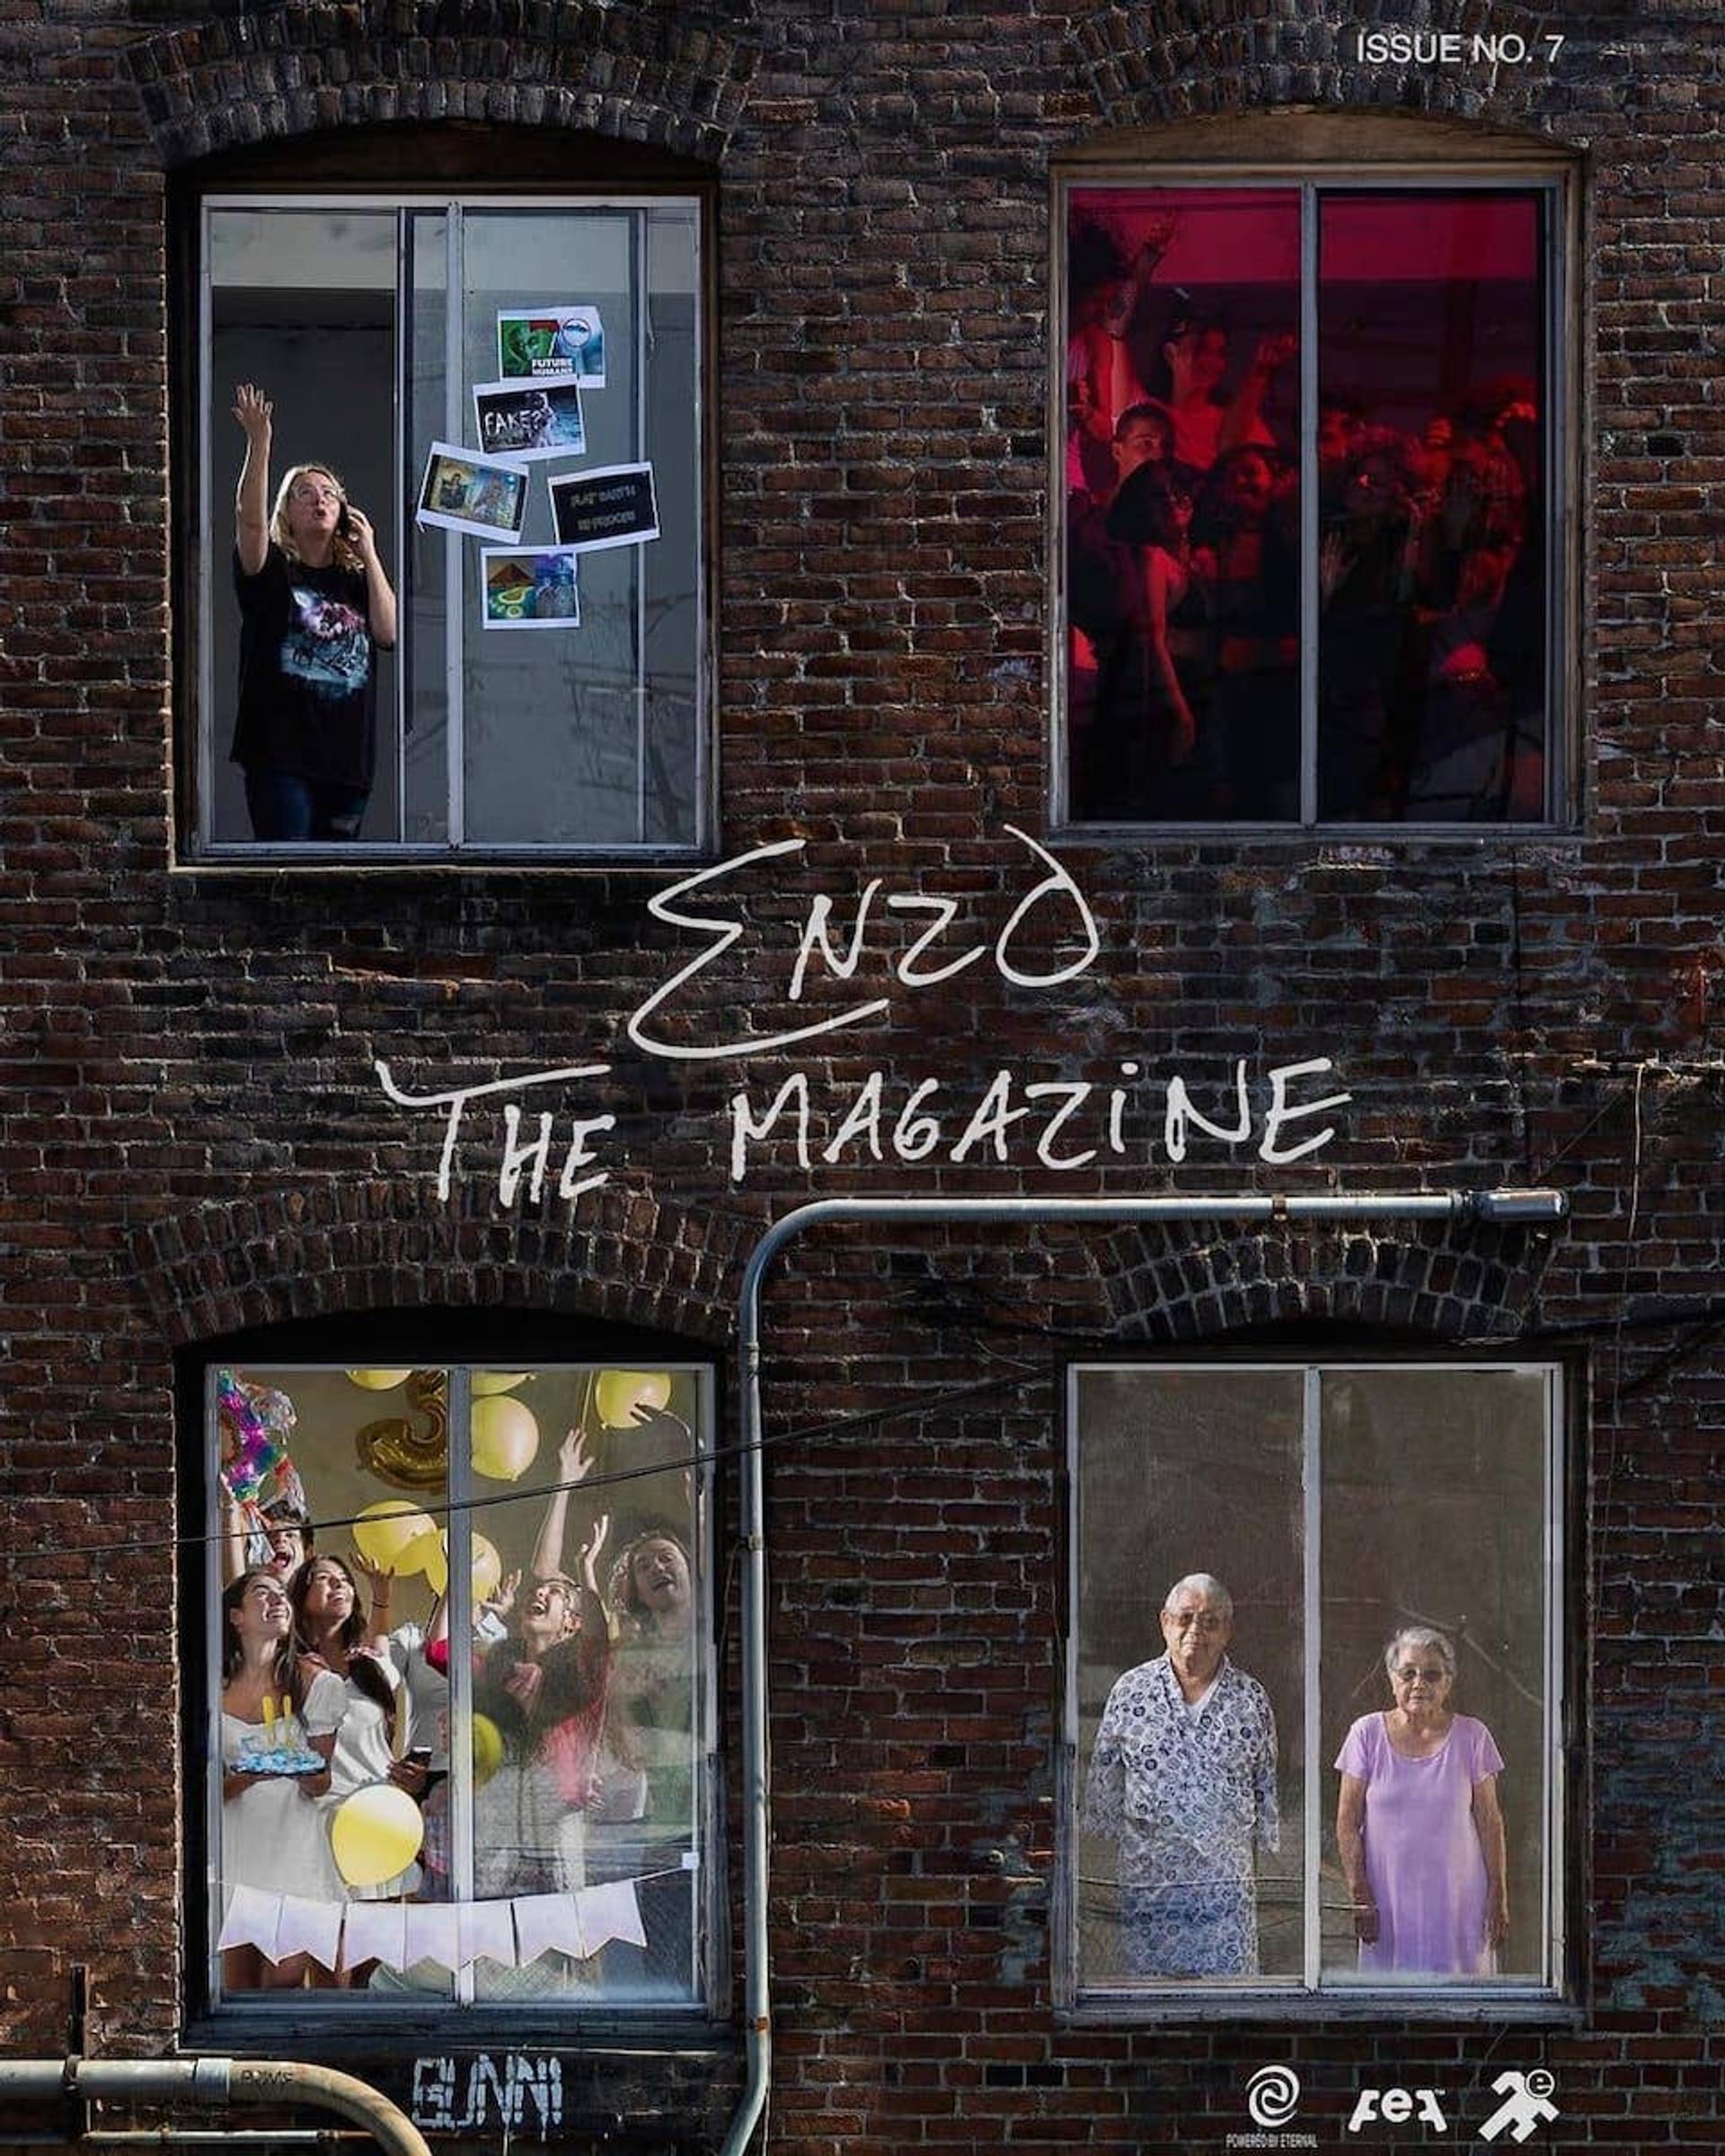 Enzo the Magazine